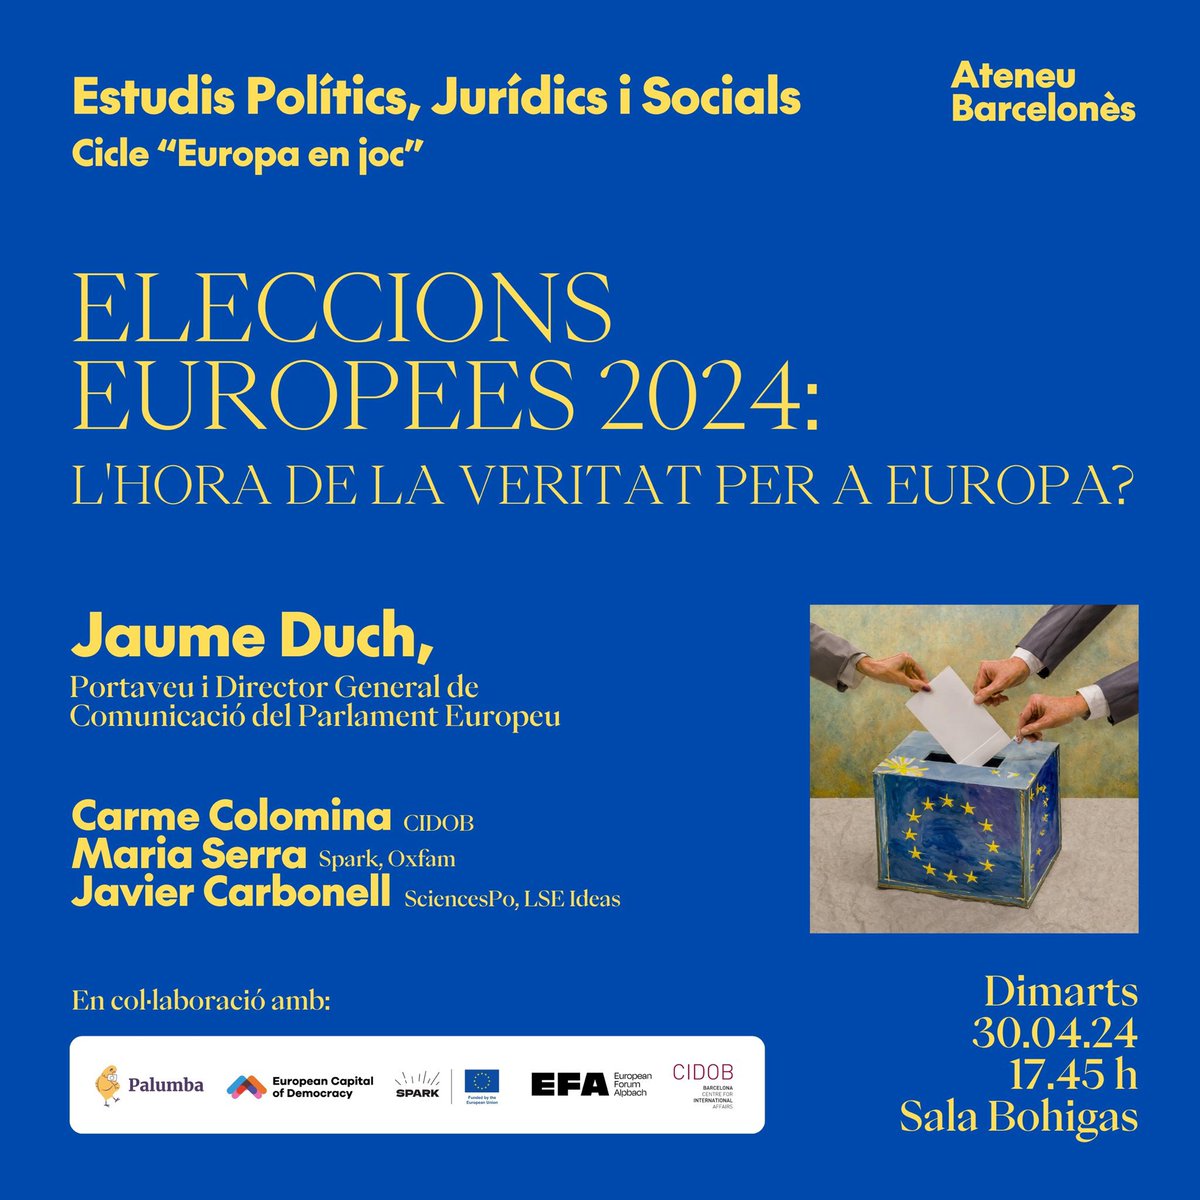 Aquesta tarda a l'@ateneubcn (17.45h)! Conferència de @jduch, DG de Comunicació i portaveu de l'@Europarl_EN Presentació de Palumba, l'app catalana per les eleccions europees 🇪🇺 @polvicor Taula rodona amb @carmecolomina, @Petitameract, @javierccll i Tertúlia jove!